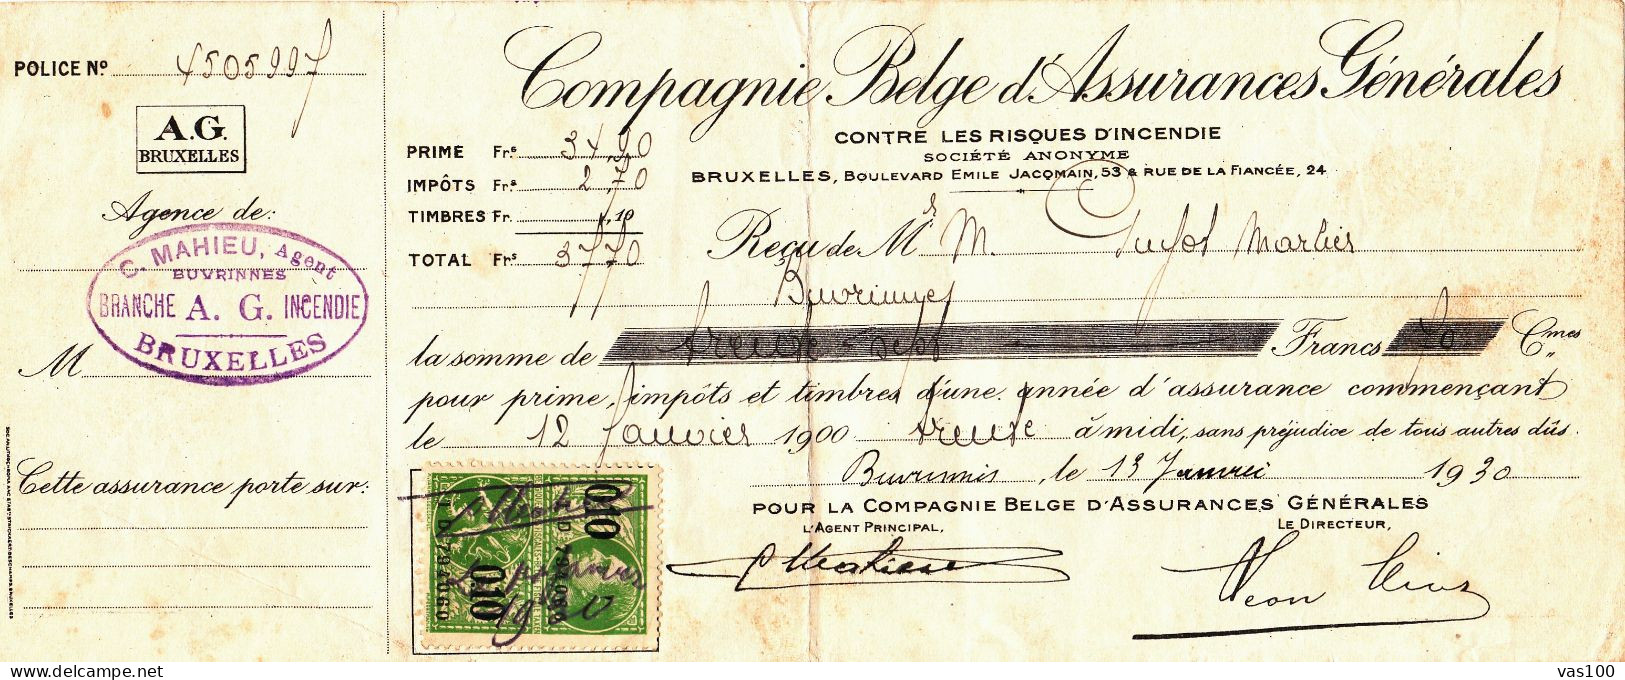 COMPAGNIE BELGE D'ASSURANCES GENERALES CONTRE LES RISQUES D'INCENDIE 1930 BELGIUM - Documents